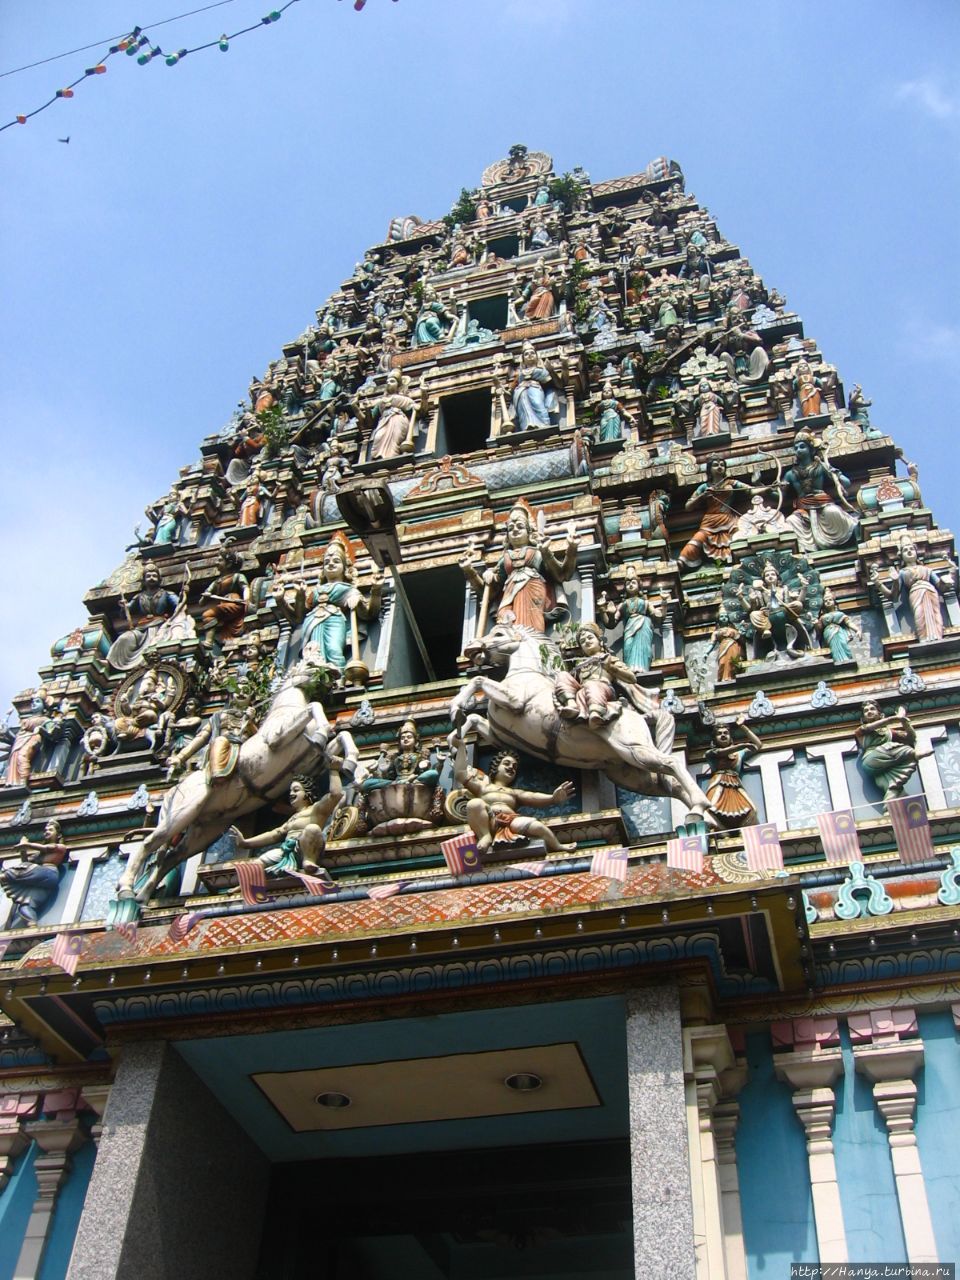 Храм Шри Махамариамман